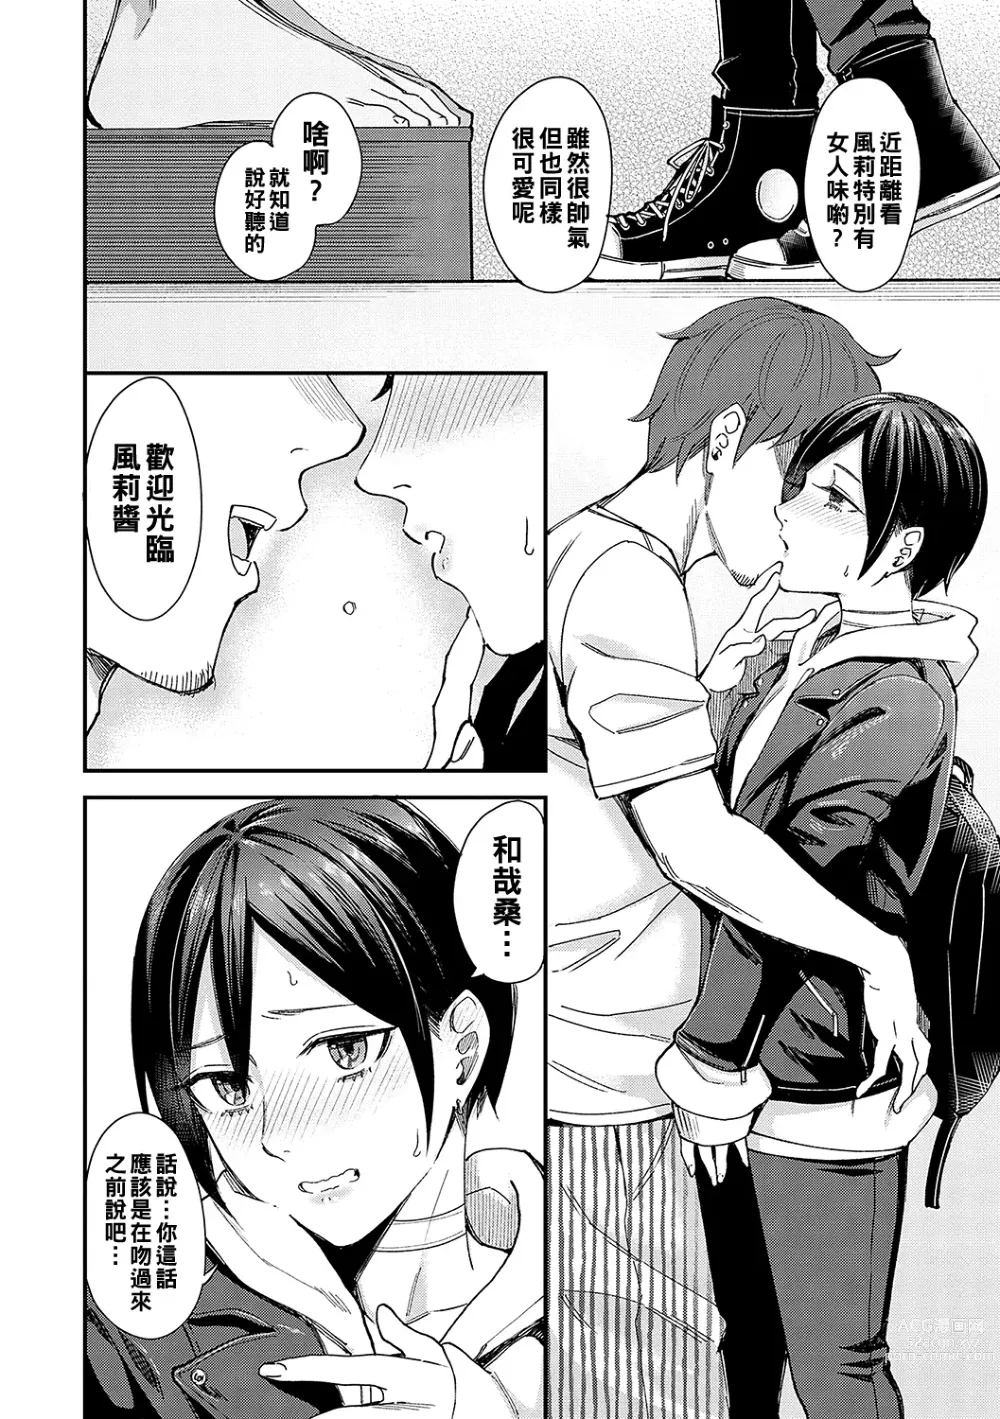 Page 6 of manga Kimi wa Tennenshoku